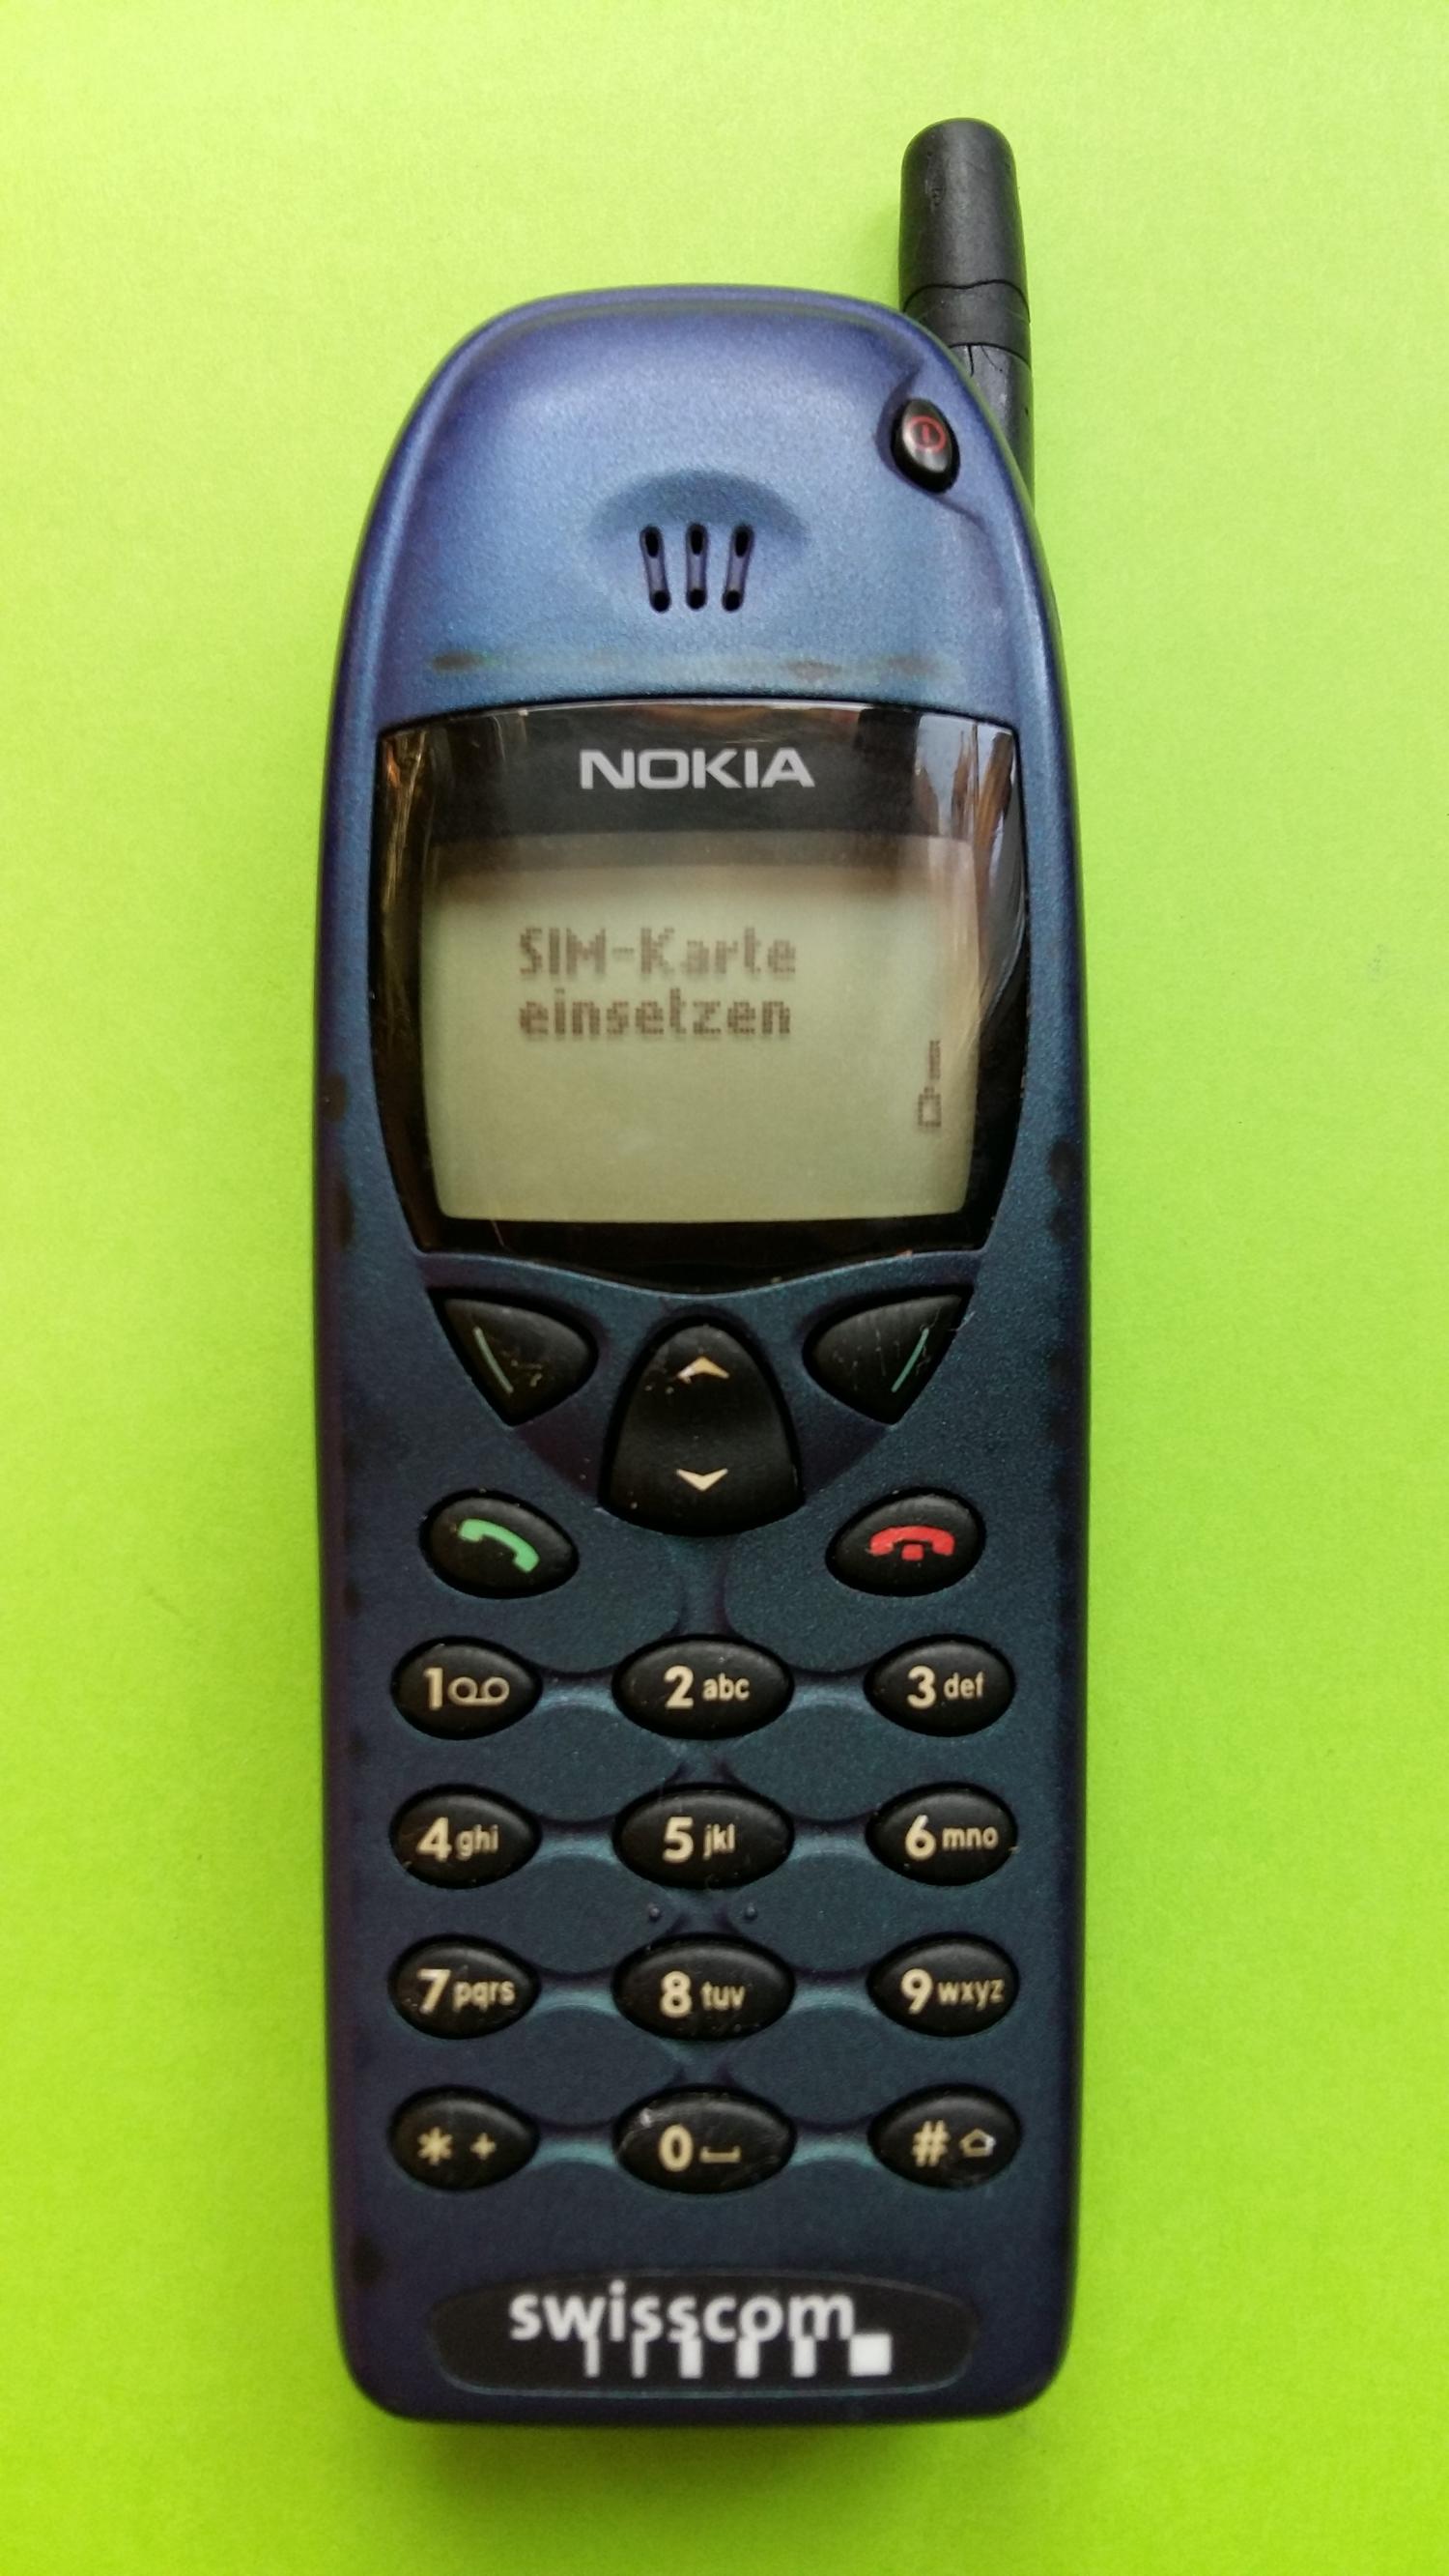 image-7304954-Nokia 6110 (2)1.jpg